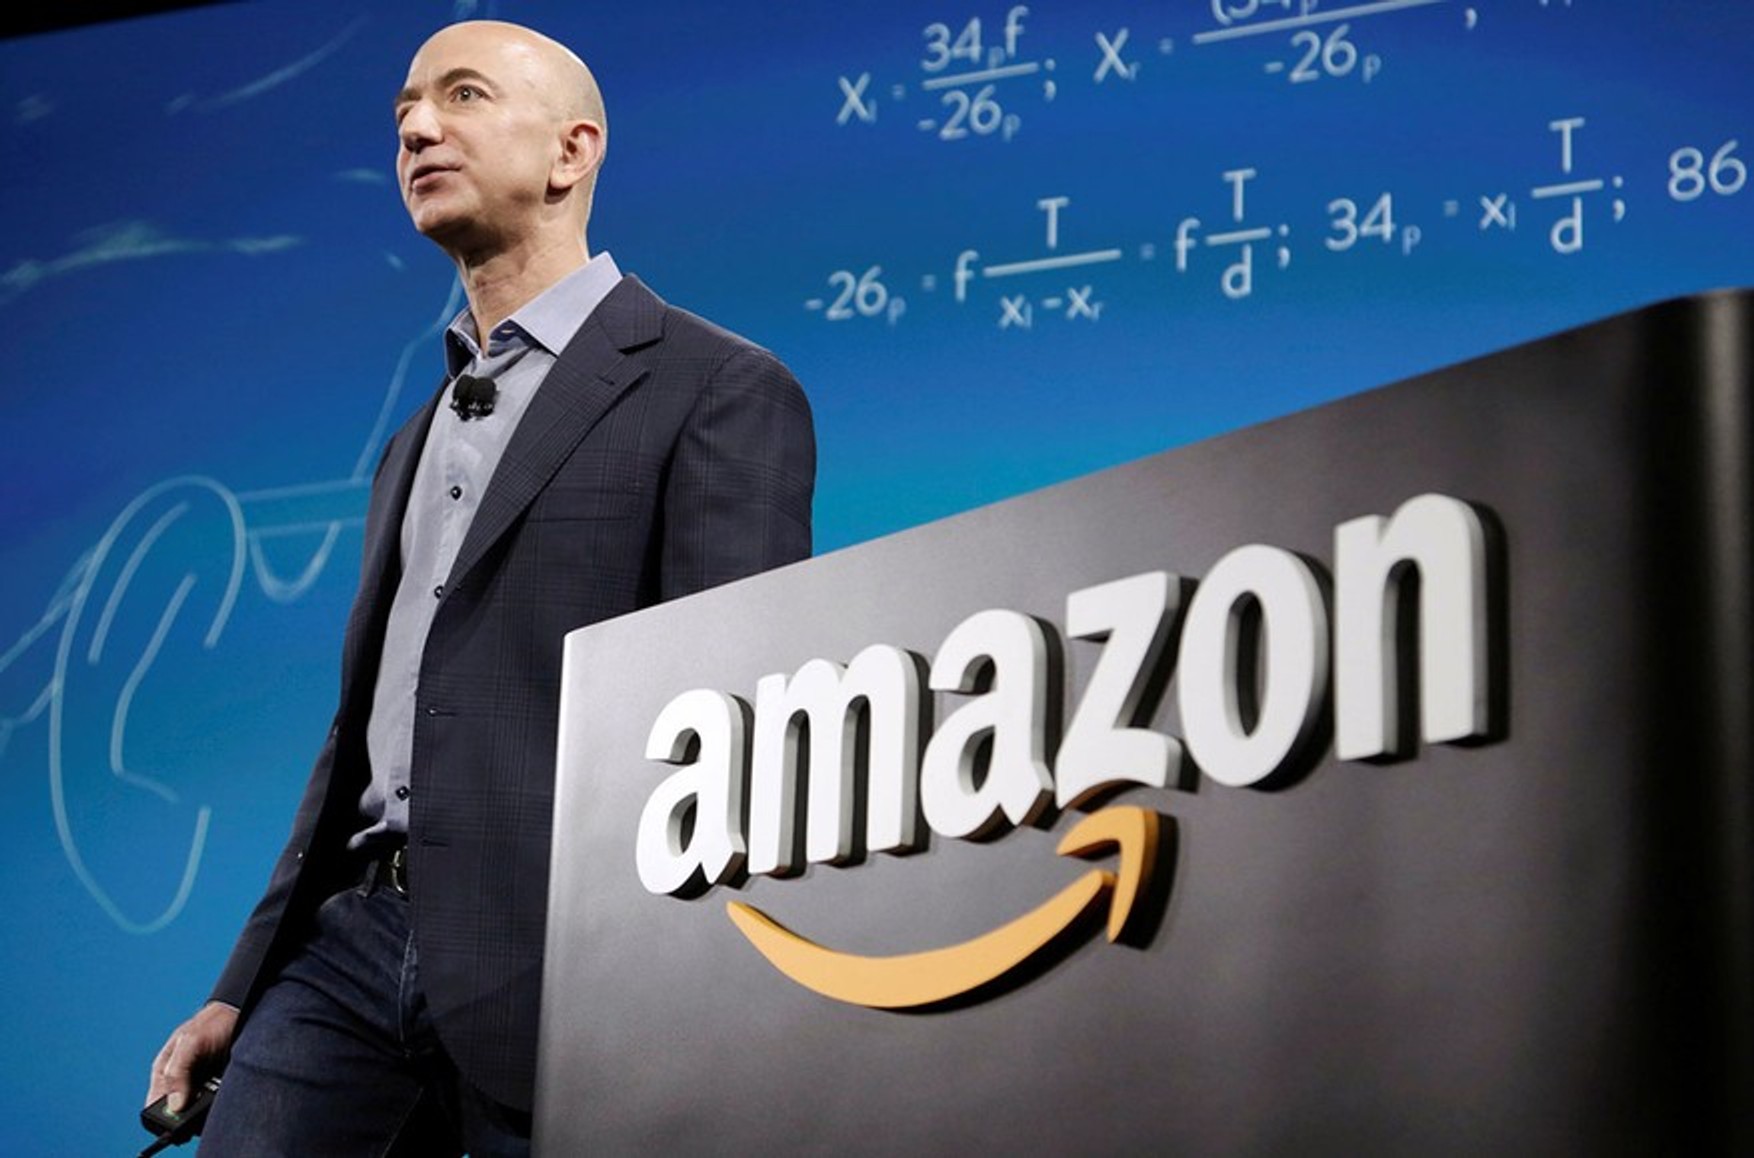 Стан засновника Amazon Джеффа Безоса зросла на $ 10 млрд після його відходу з поста глави компанії